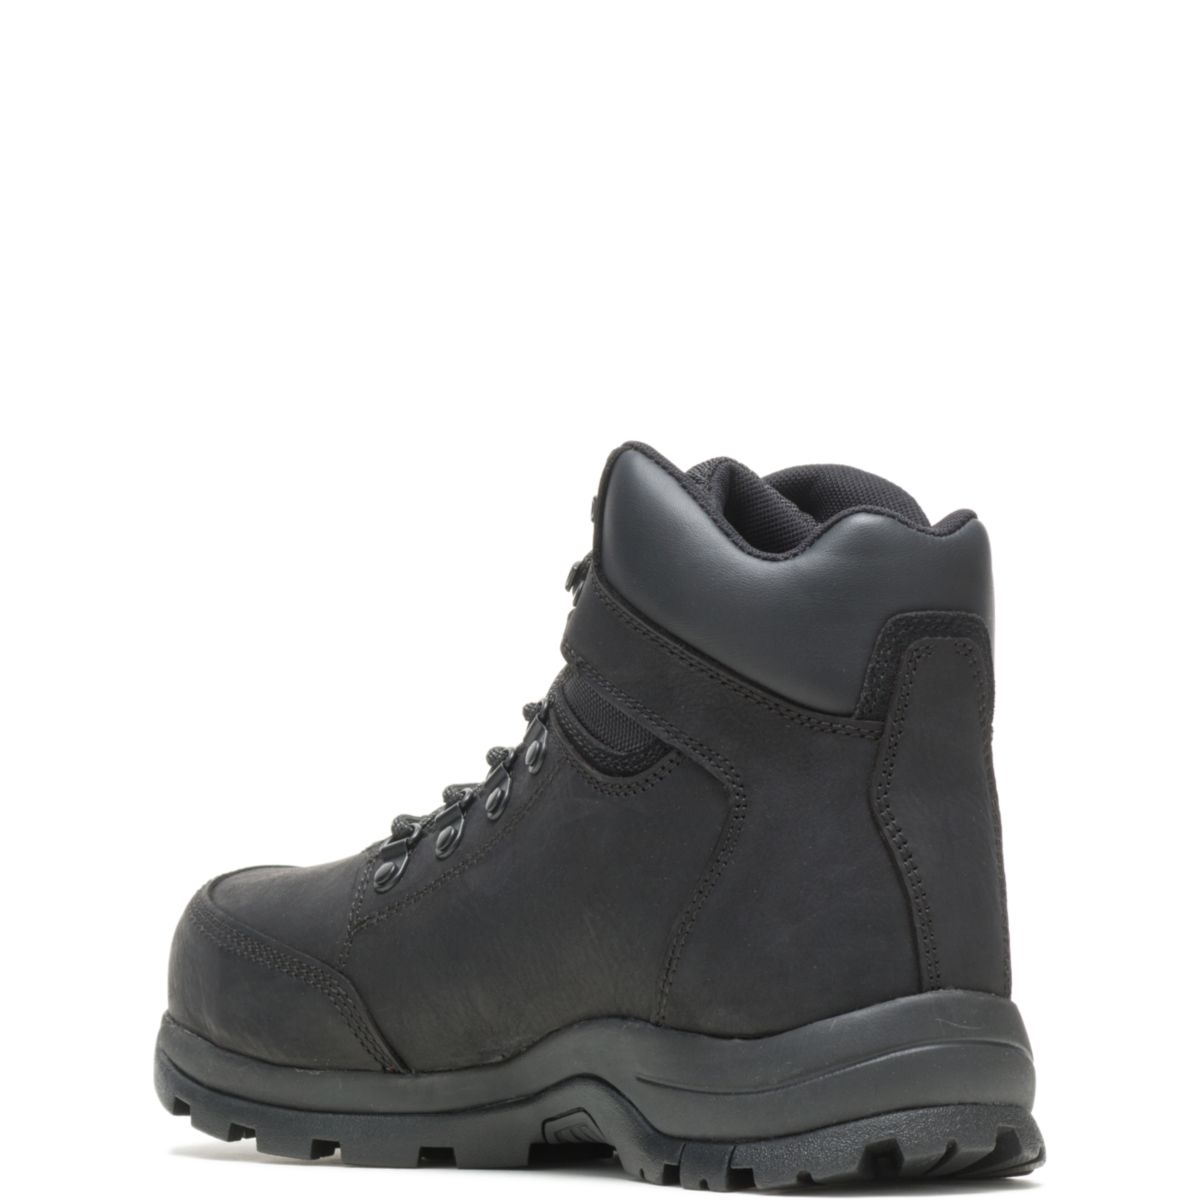 WOLVERINE Men's Grayson Steel Toe Waterproof Work Boot Black - W211042 BLACK - BLACK, 11.5